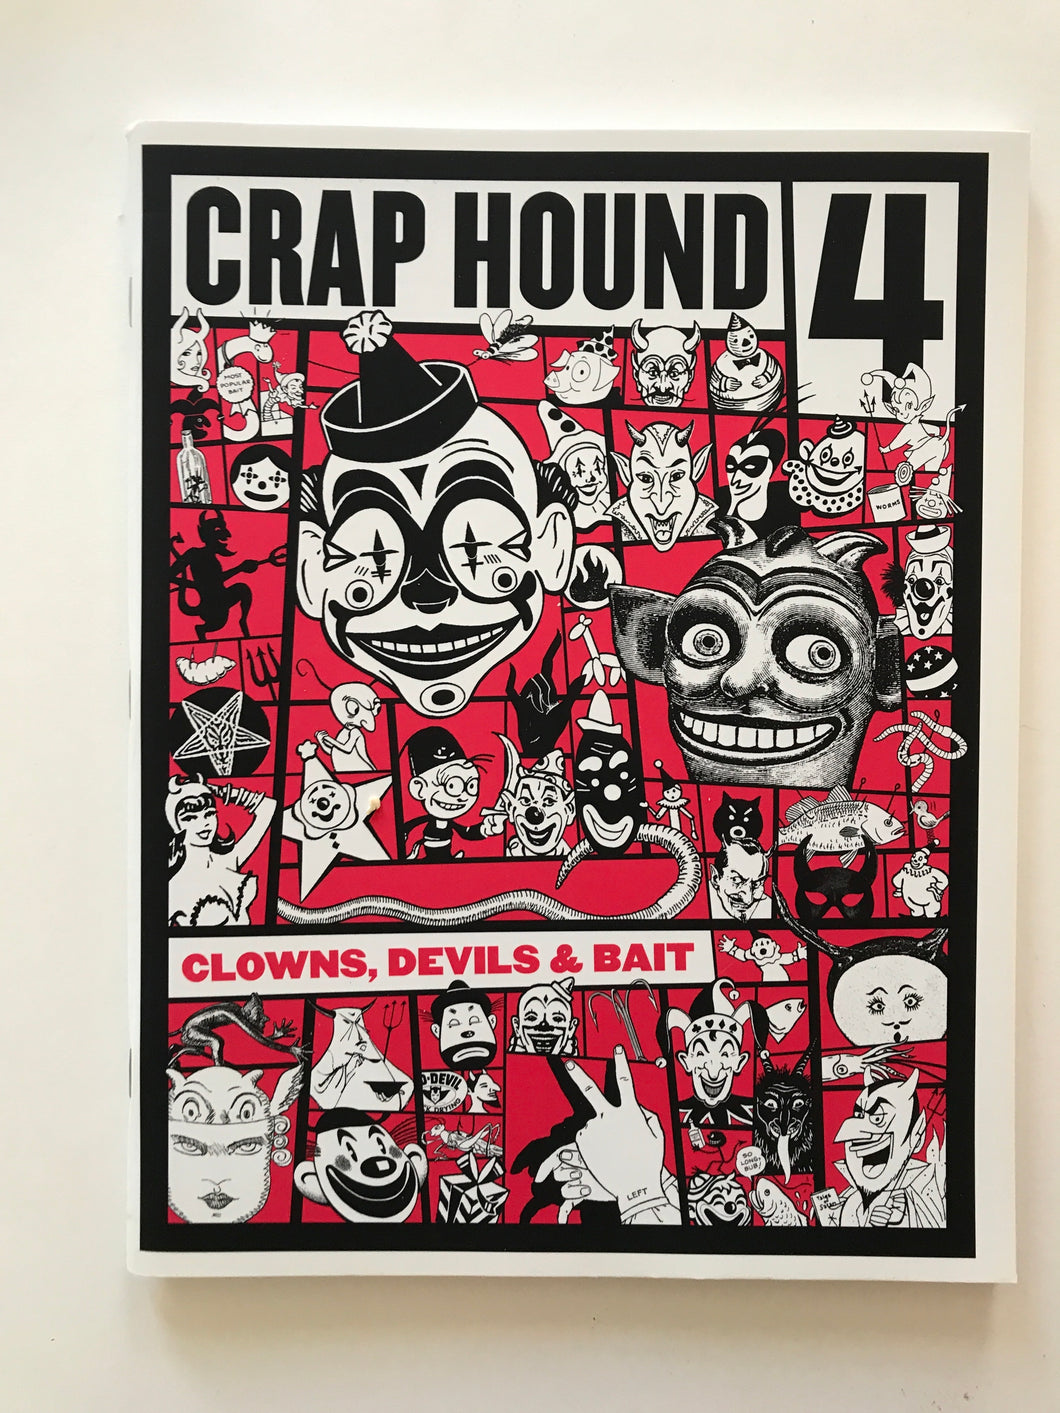 Crap Hound 4 - Clown, Devils & Baits